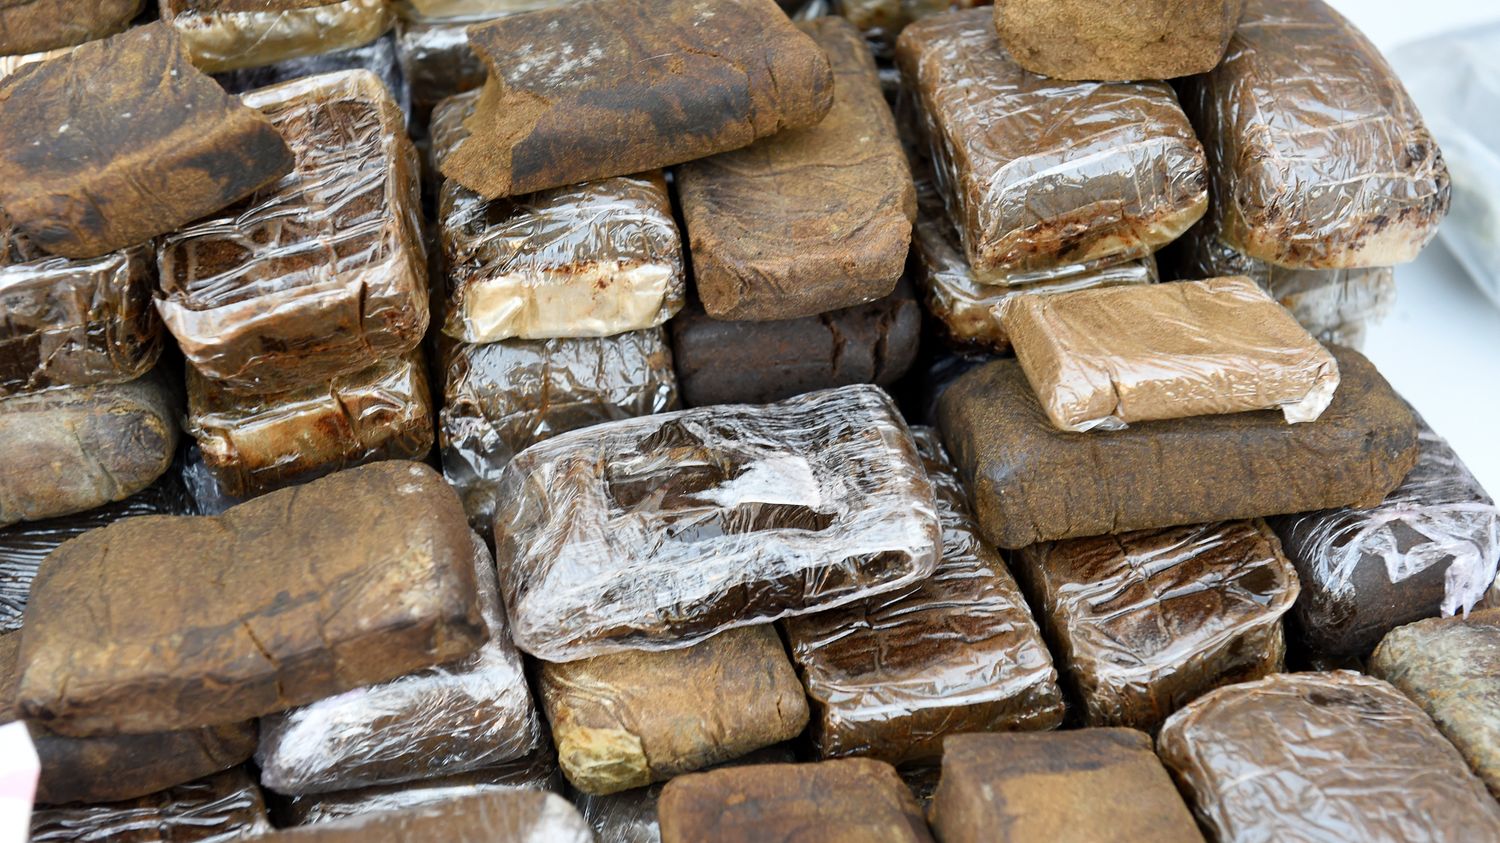 2,4 tonnes de résine de cannabis découvertes dans un camion à Flins-sur-Seine, trois hommes en garde à vue